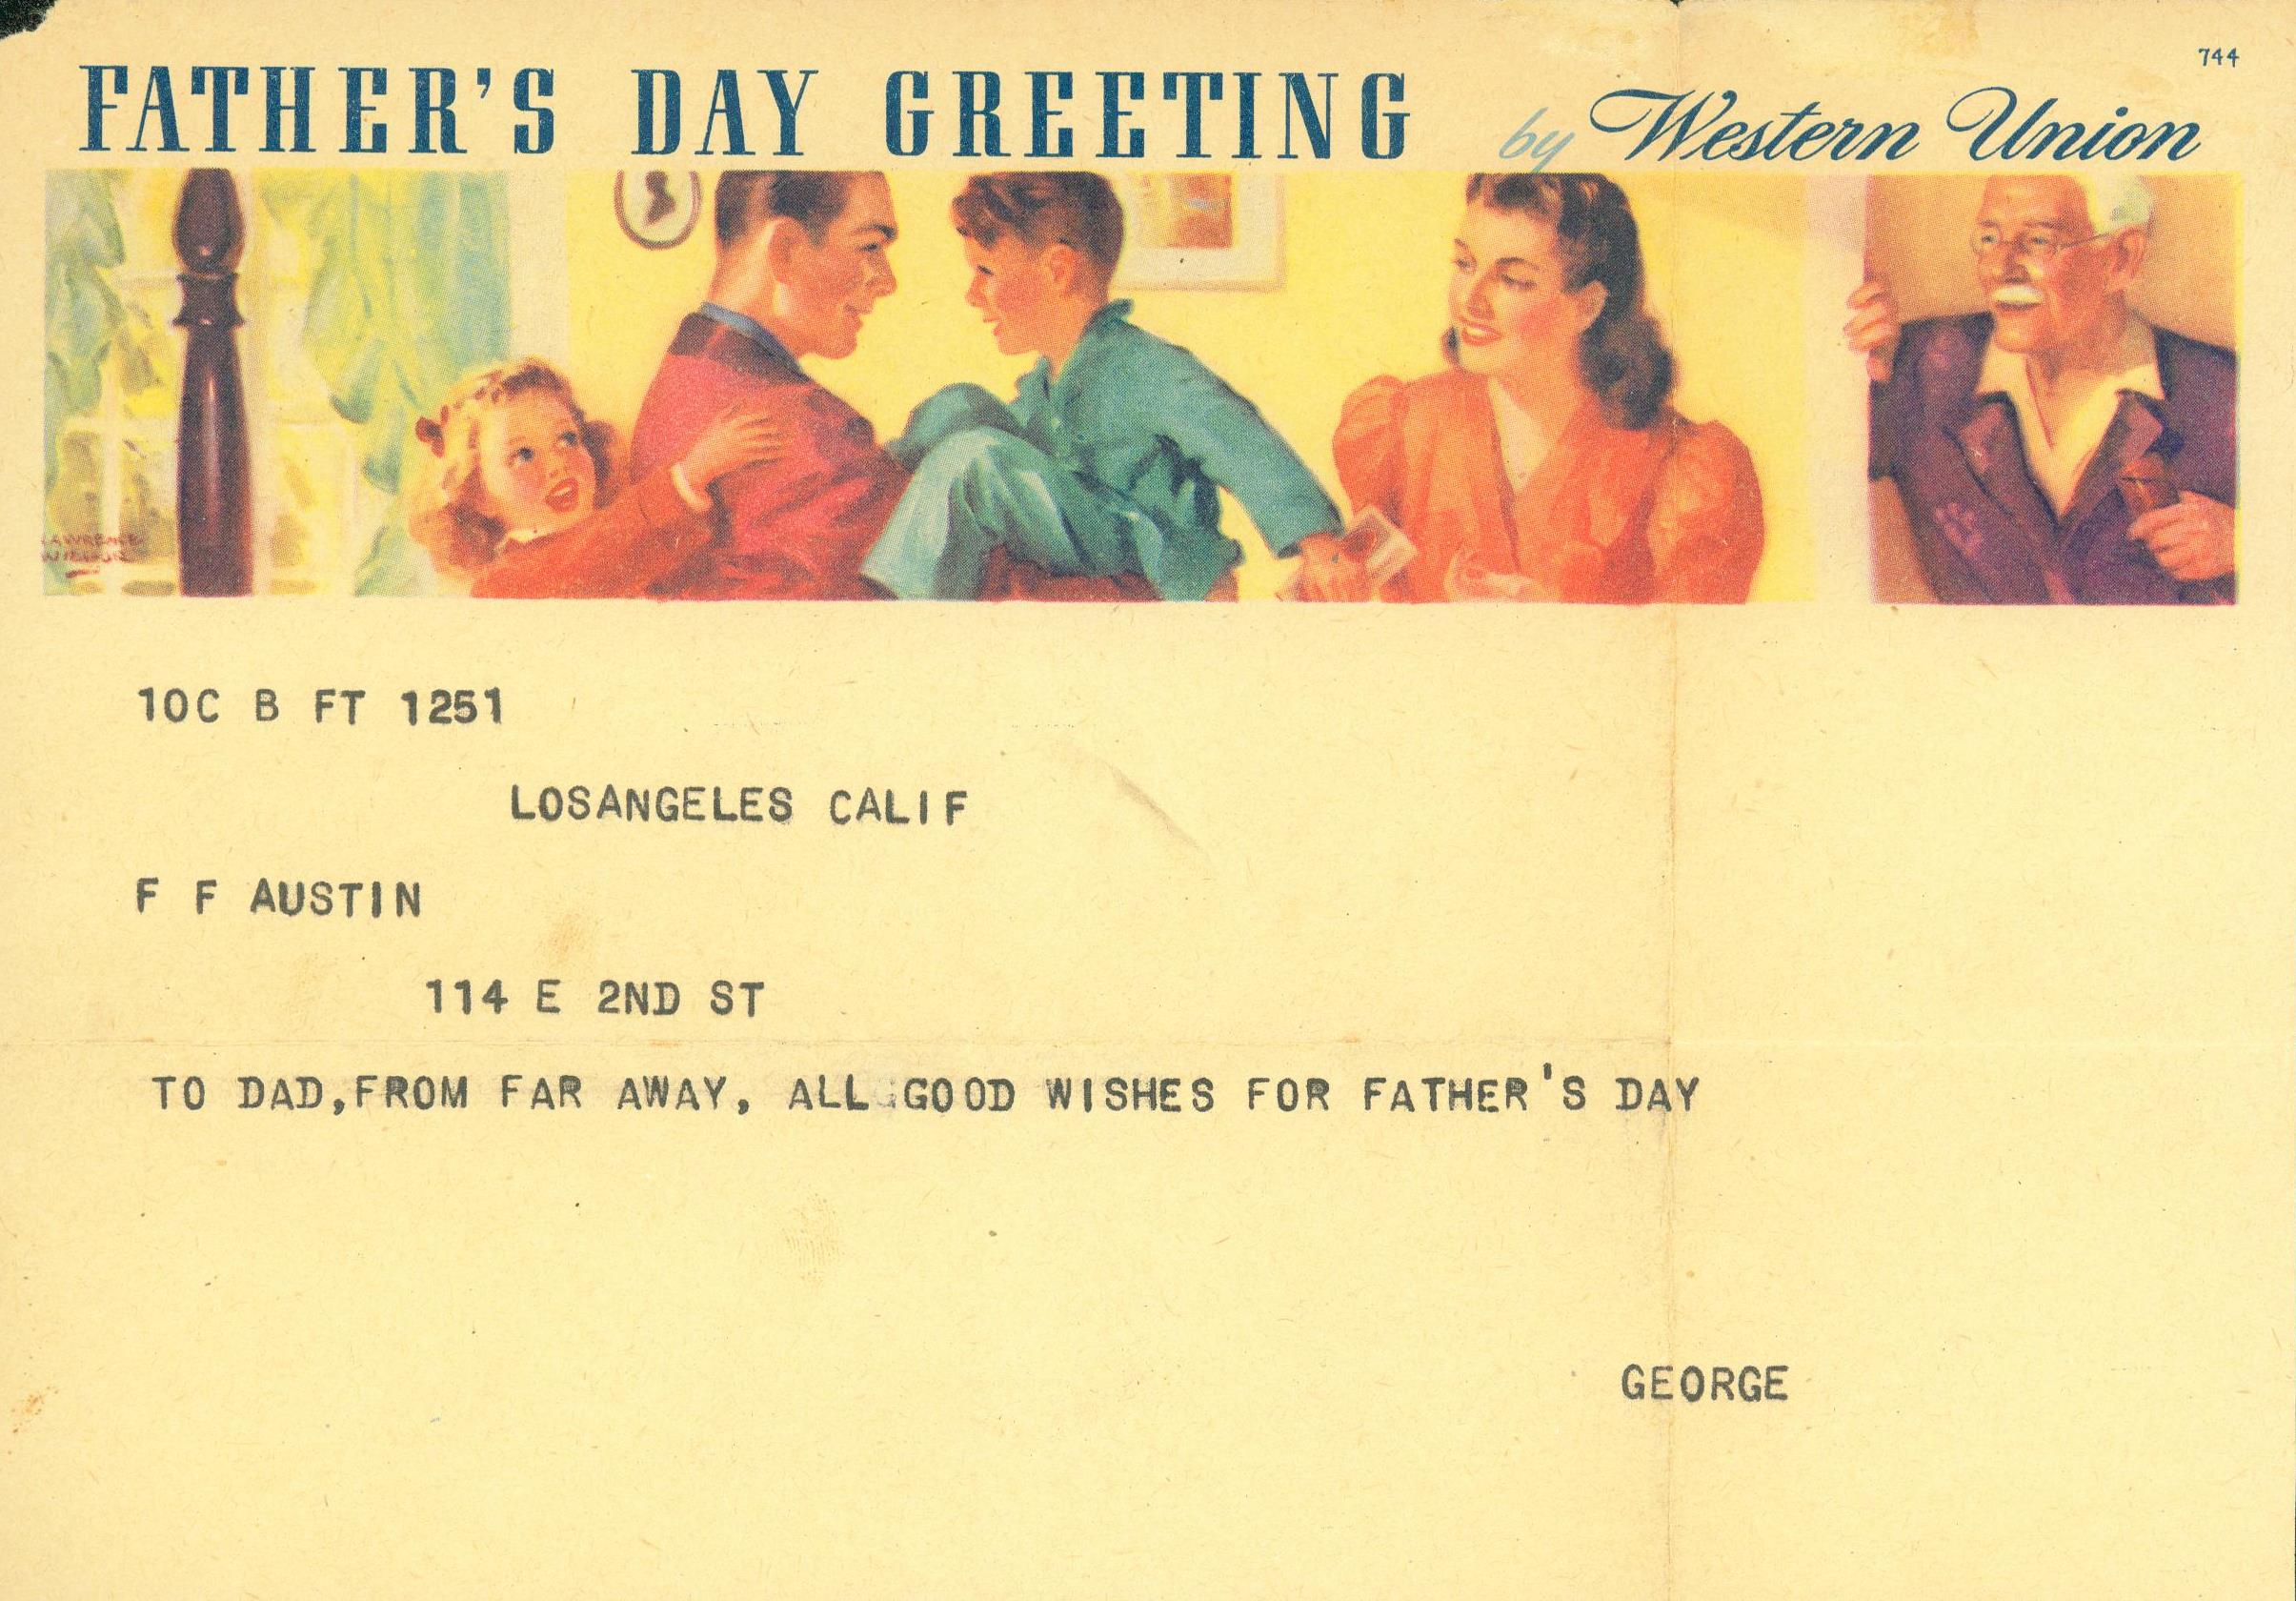 Télégramme de la fête des pères vers 1941 © USMC Archives - licence [CC BY 2.0] de Wikimedia Commons